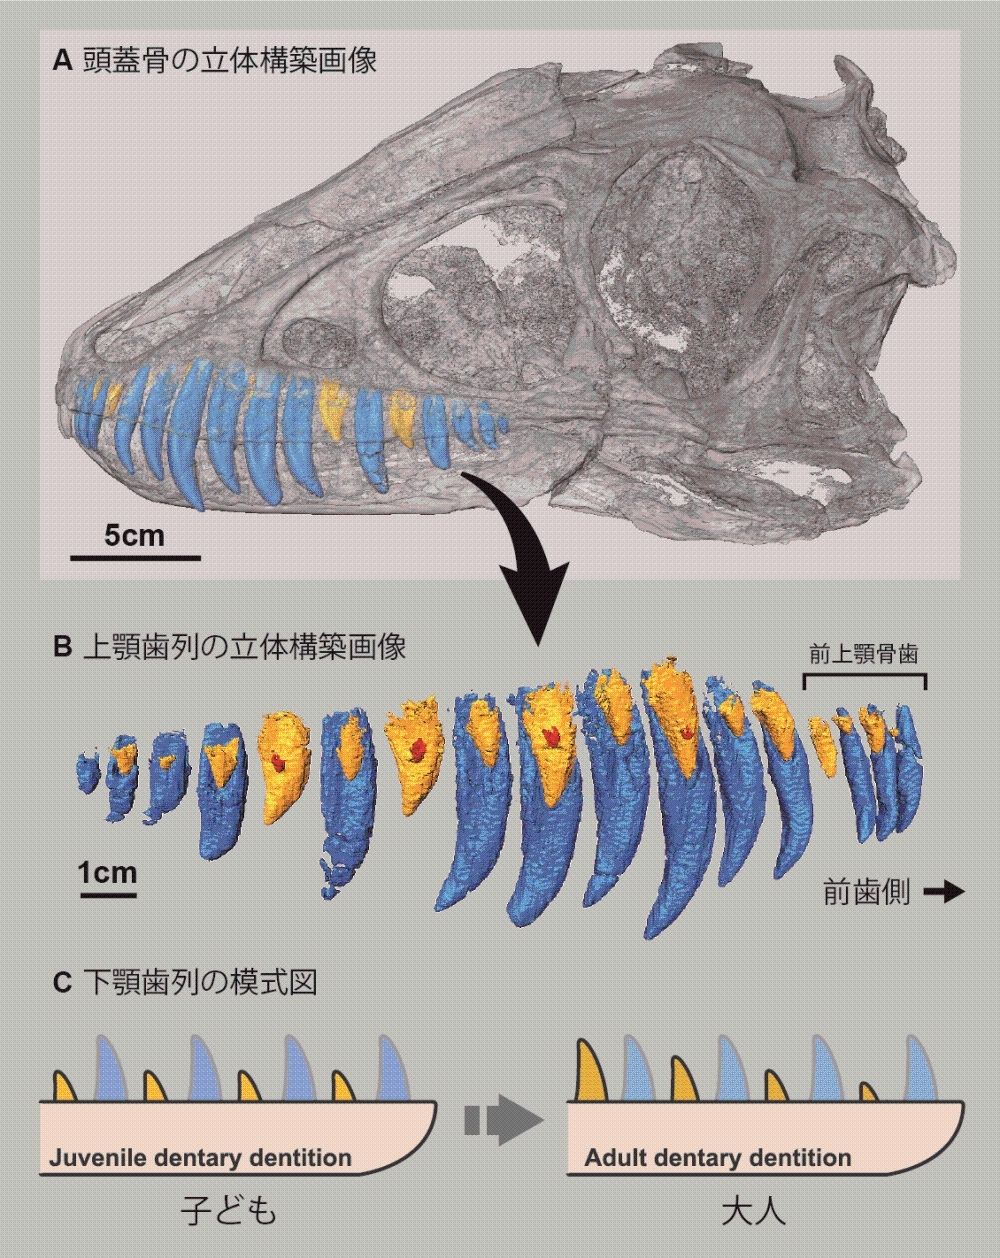 ティラノサウルス科の化石から、歯の生えかわりの規則性を解明 | 東京大学